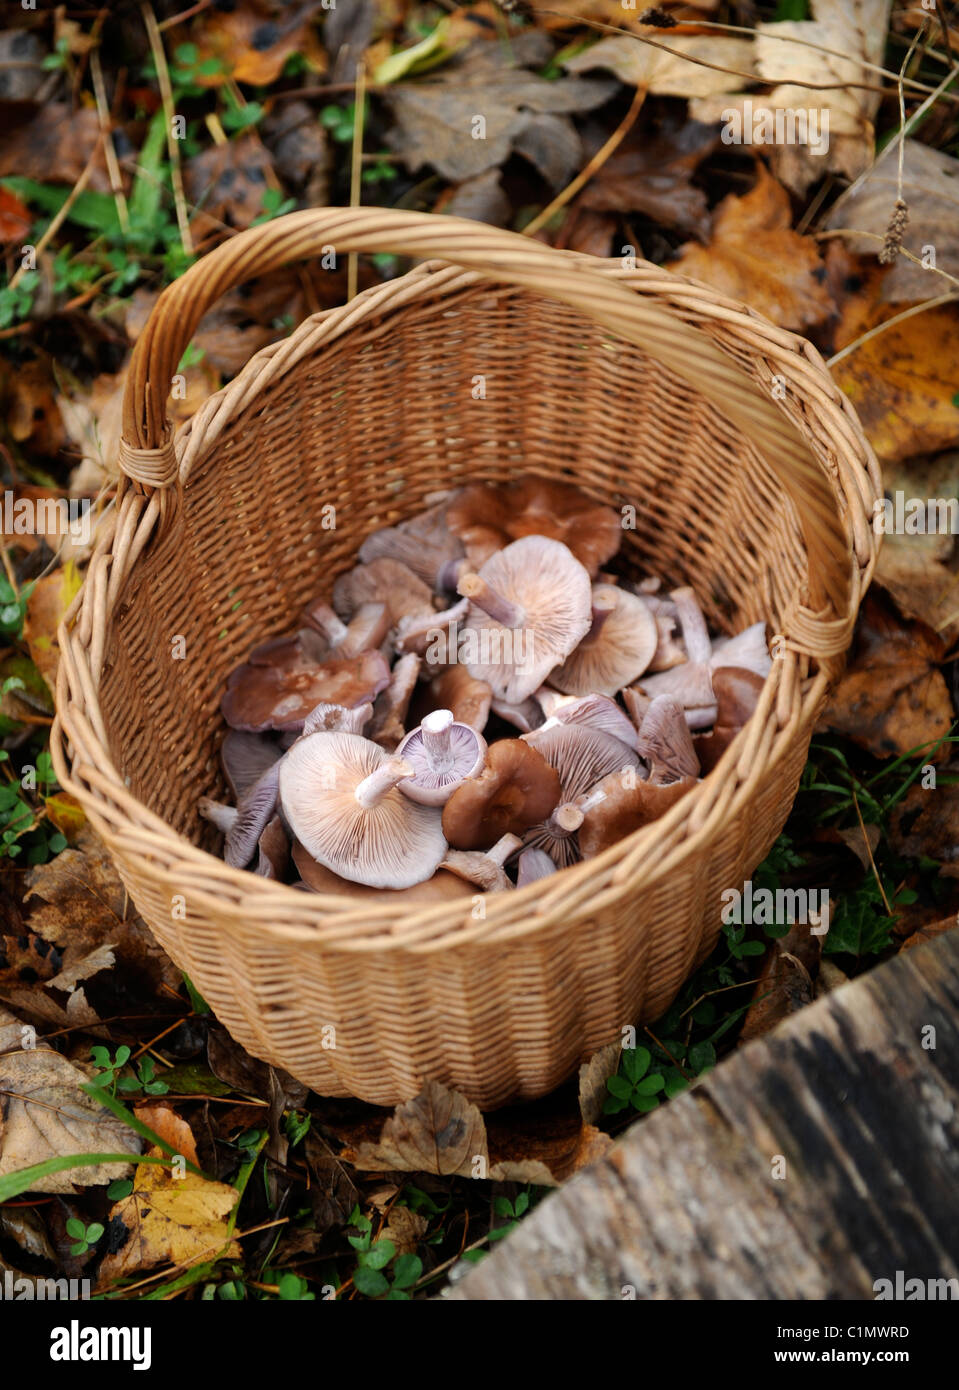 Un panier de champignons Bois Blewit recueillies en Gwent woodland Pays de Galles, Royaume-Uni Banque D'Images